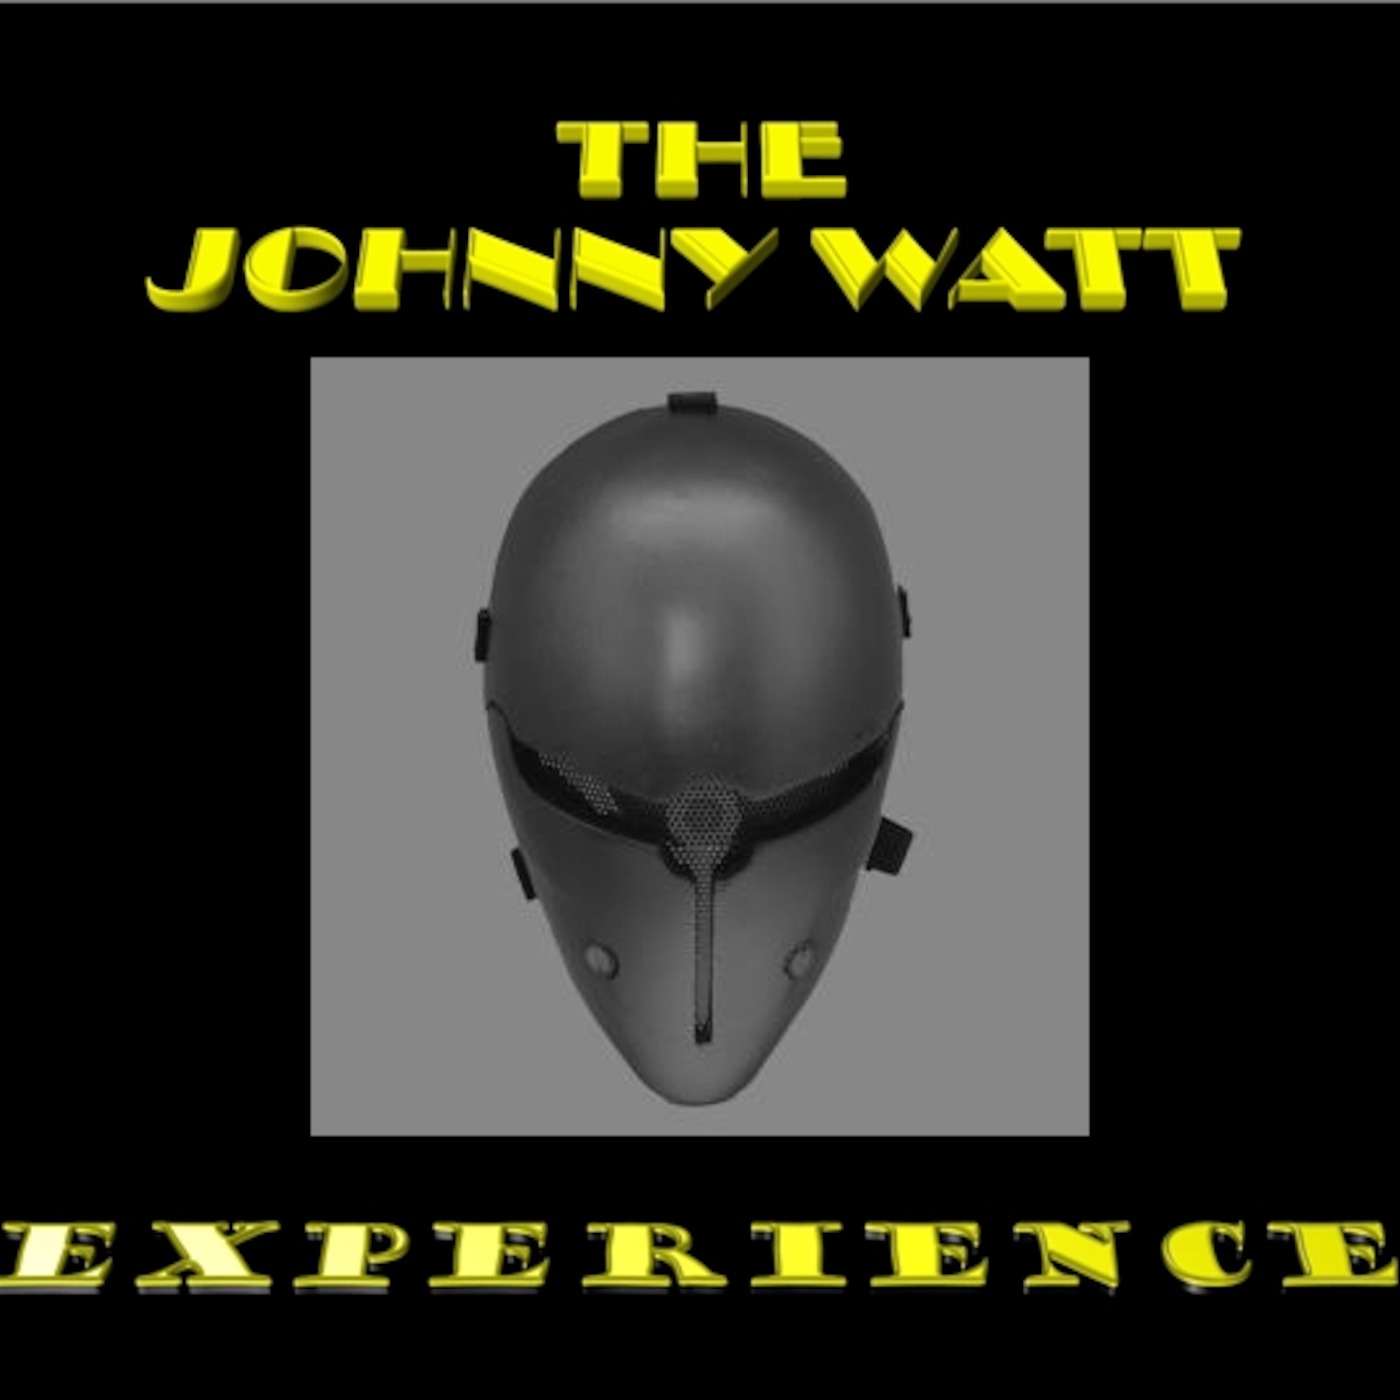 Episode 2 - A very Johnny Watt Christmas - Part 1